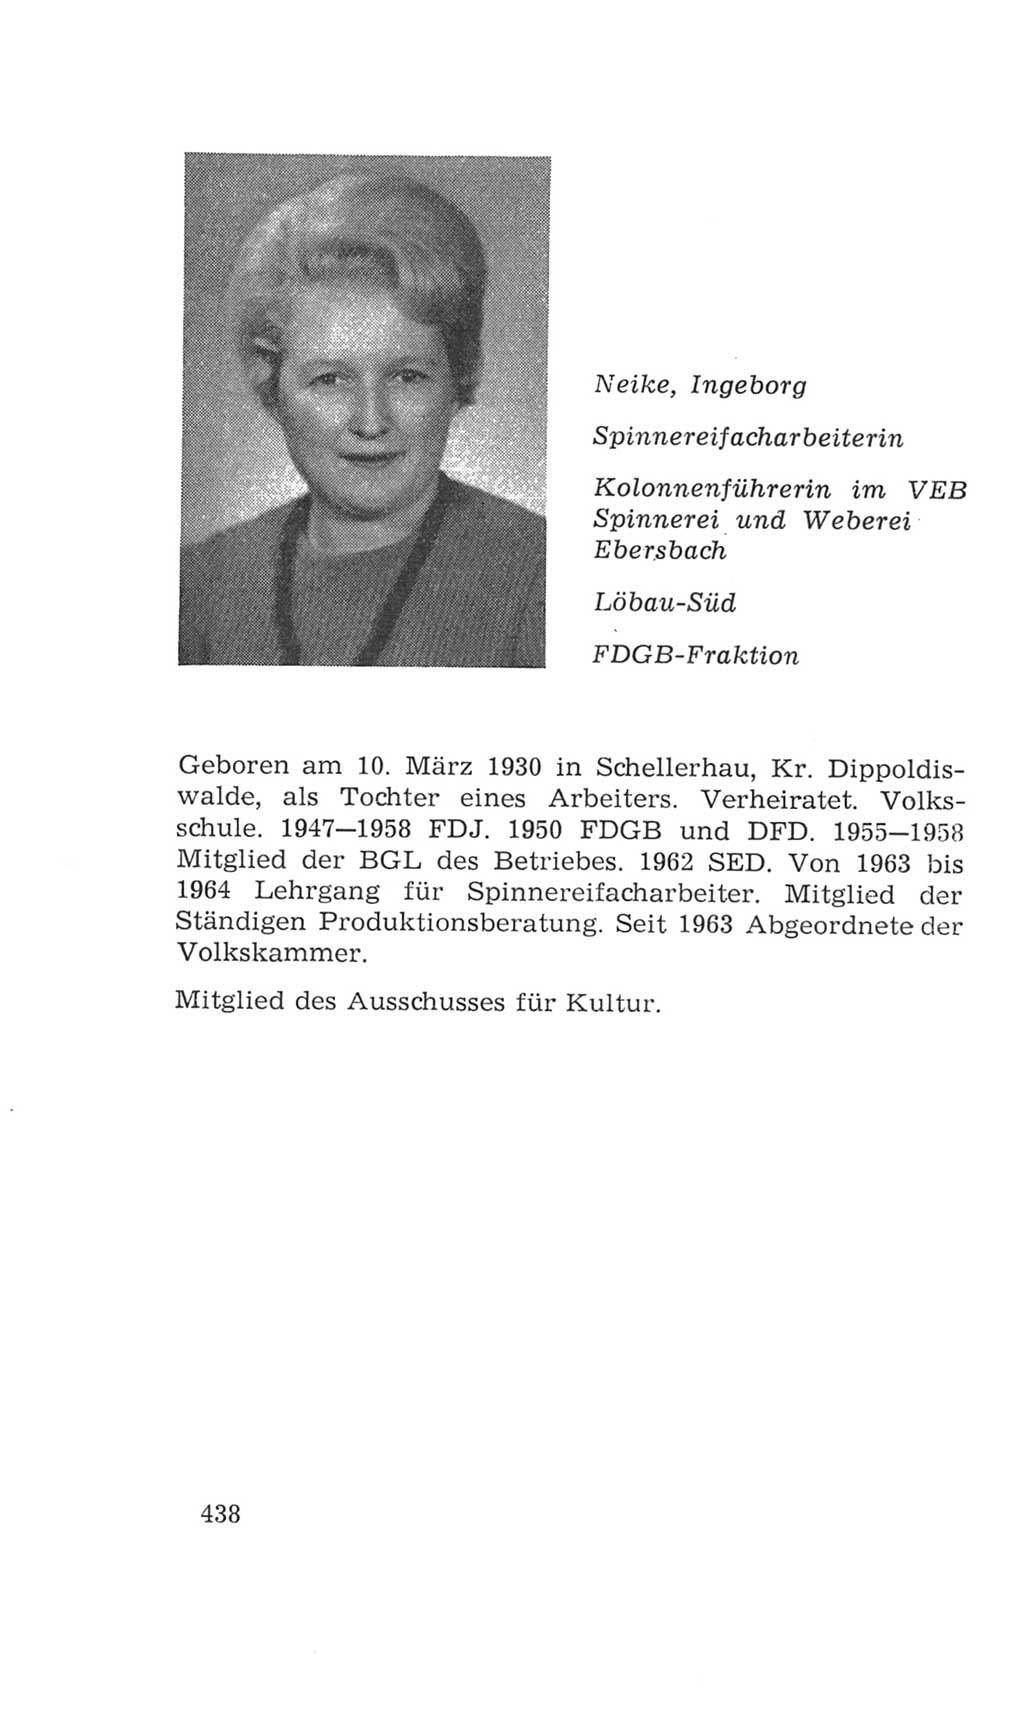 Volkskammer (VK) der Deutschen Demokratischen Republik (DDR), 4. Wahlperiode 1963-1967, Seite 438 (VK. DDR 4. WP. 1963-1967, S. 438)